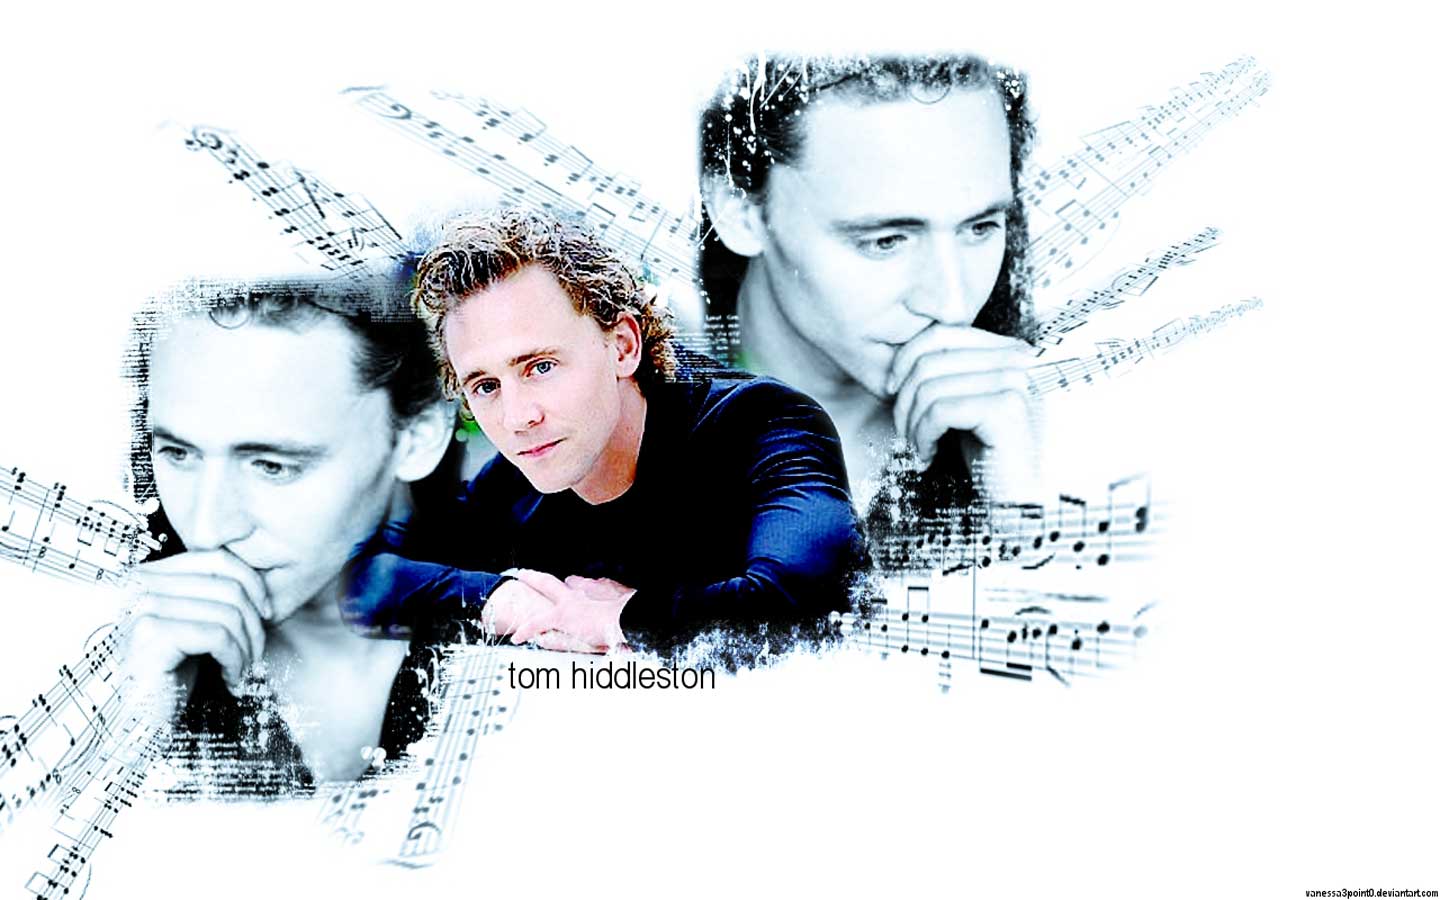 Tom Hiddleston Wallpaper - Tom Hiddleston Wallpaper 24707496